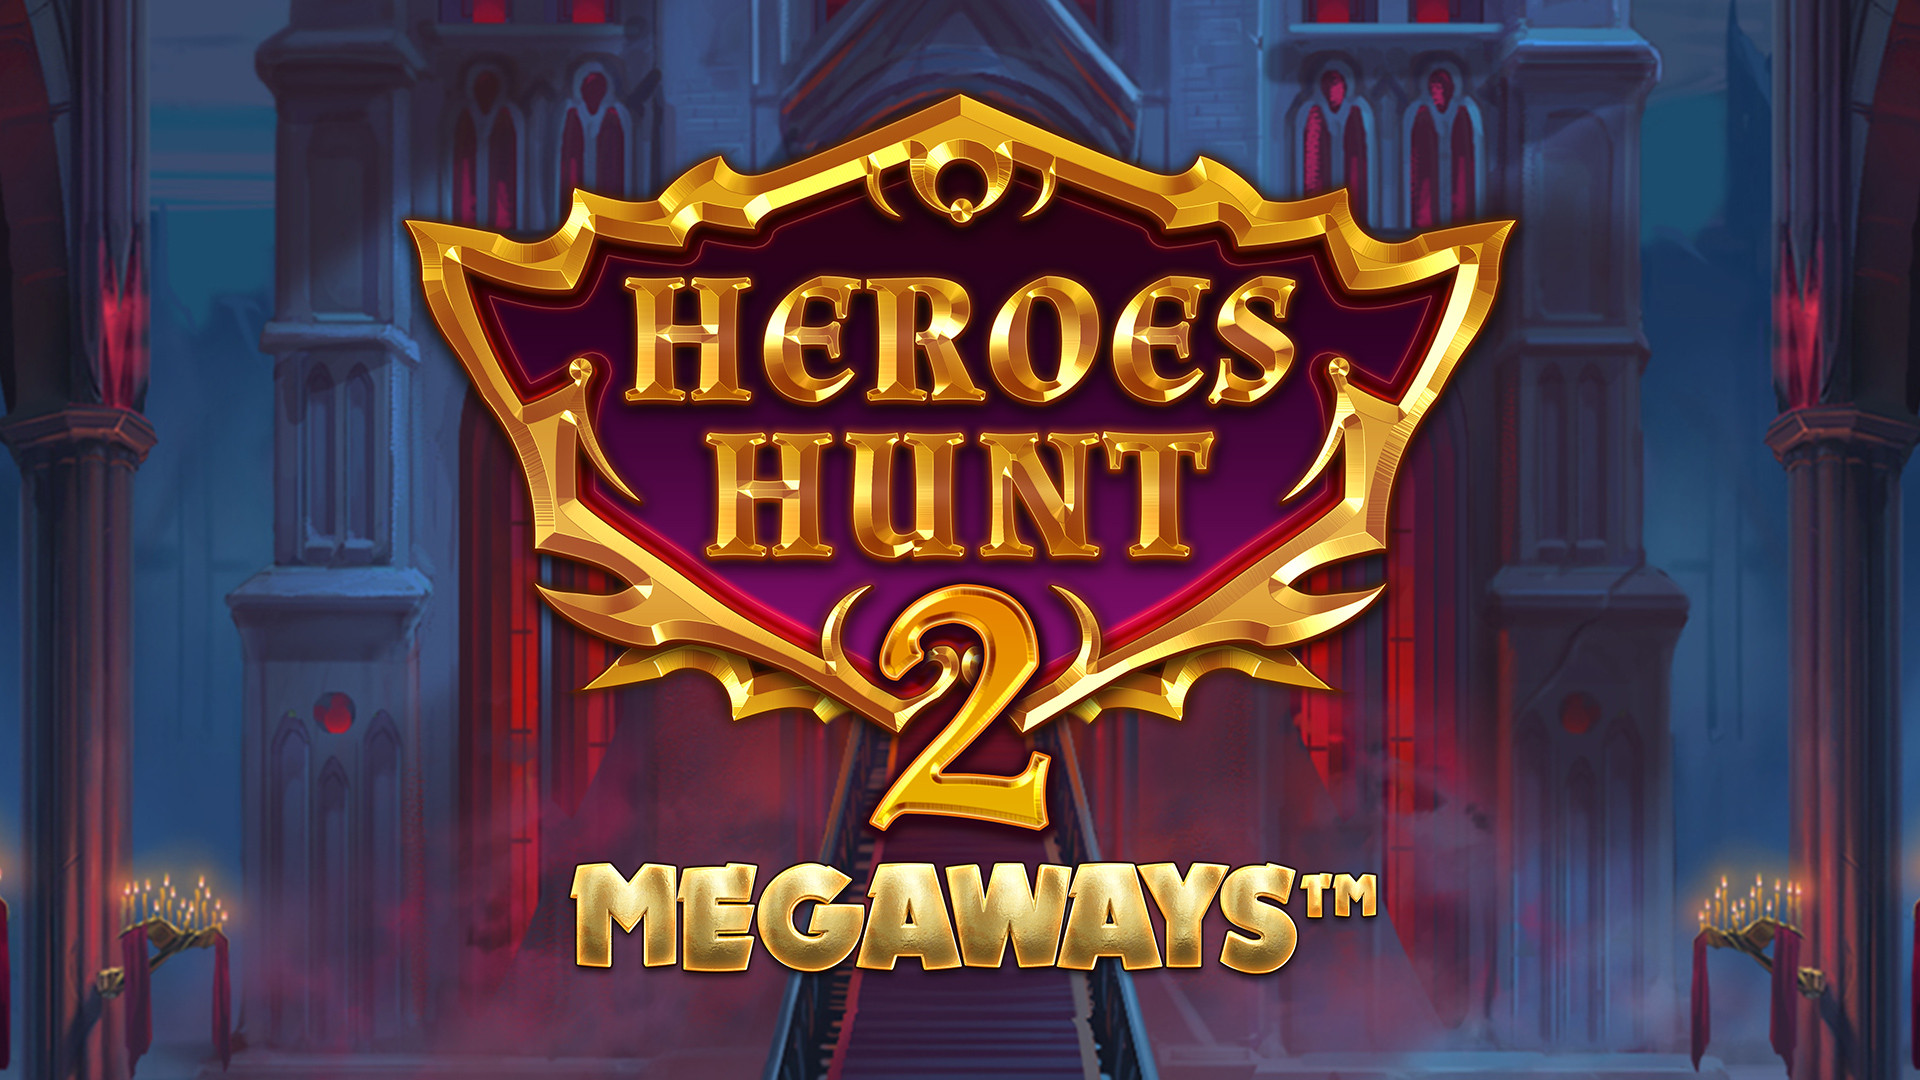 Heroes Hunt 2 MEGAWAYS